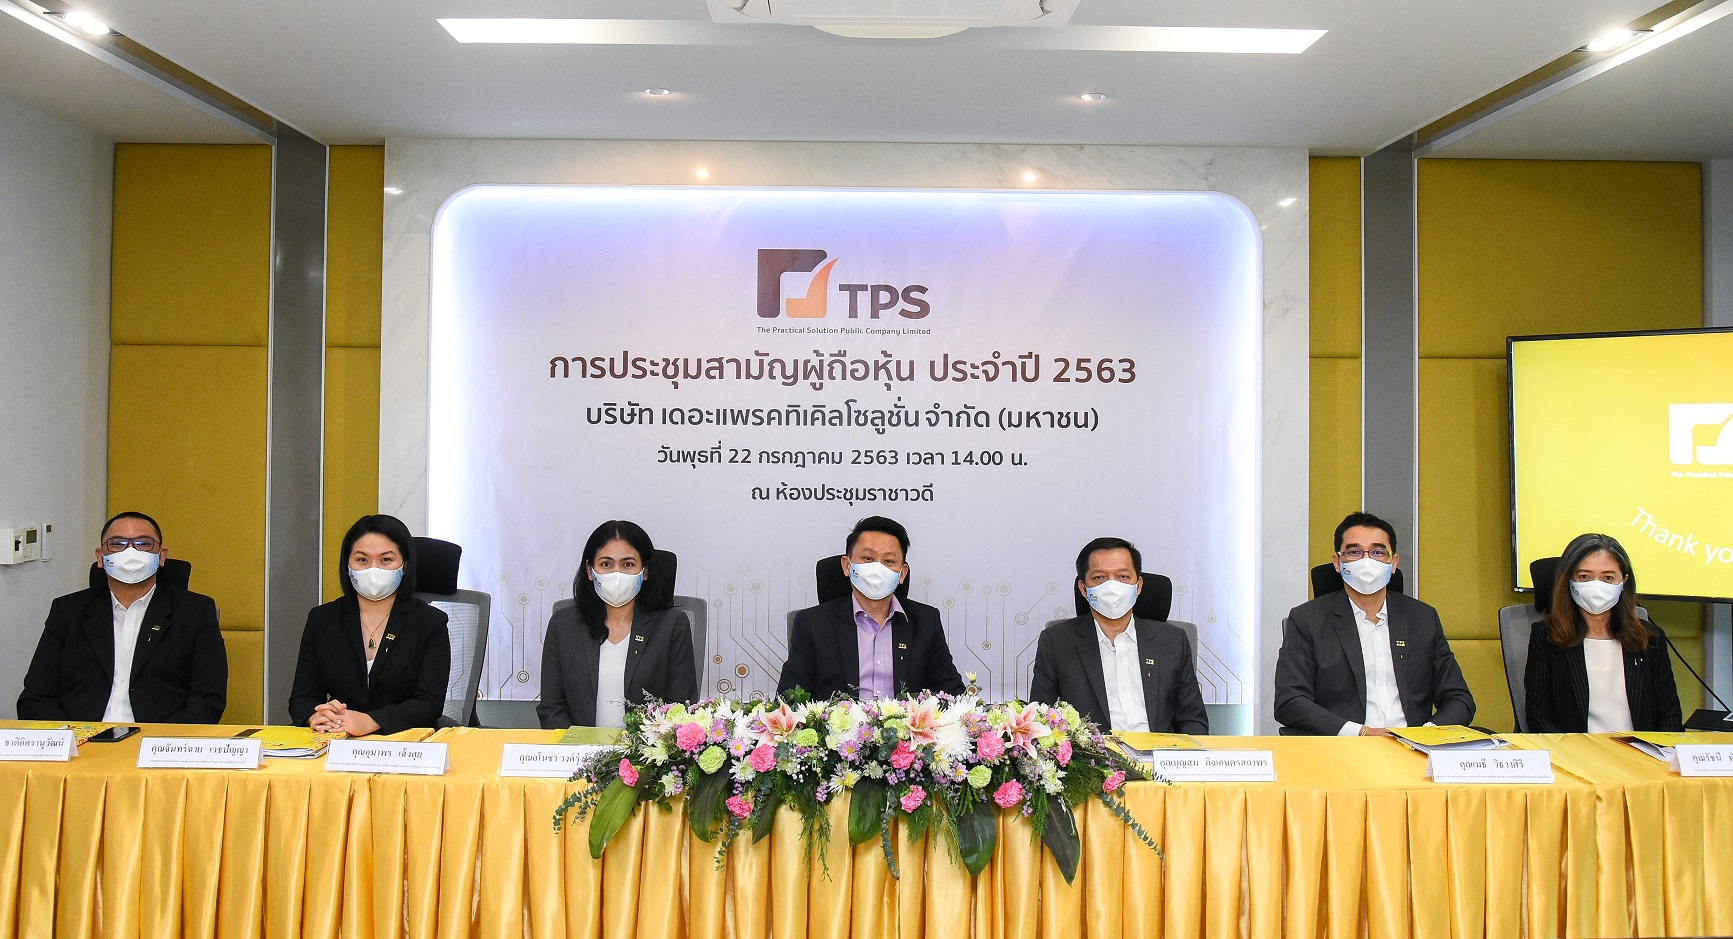 TPS จัดประชุมสามัญผู้ถือหุ้น ประจำปี 2563